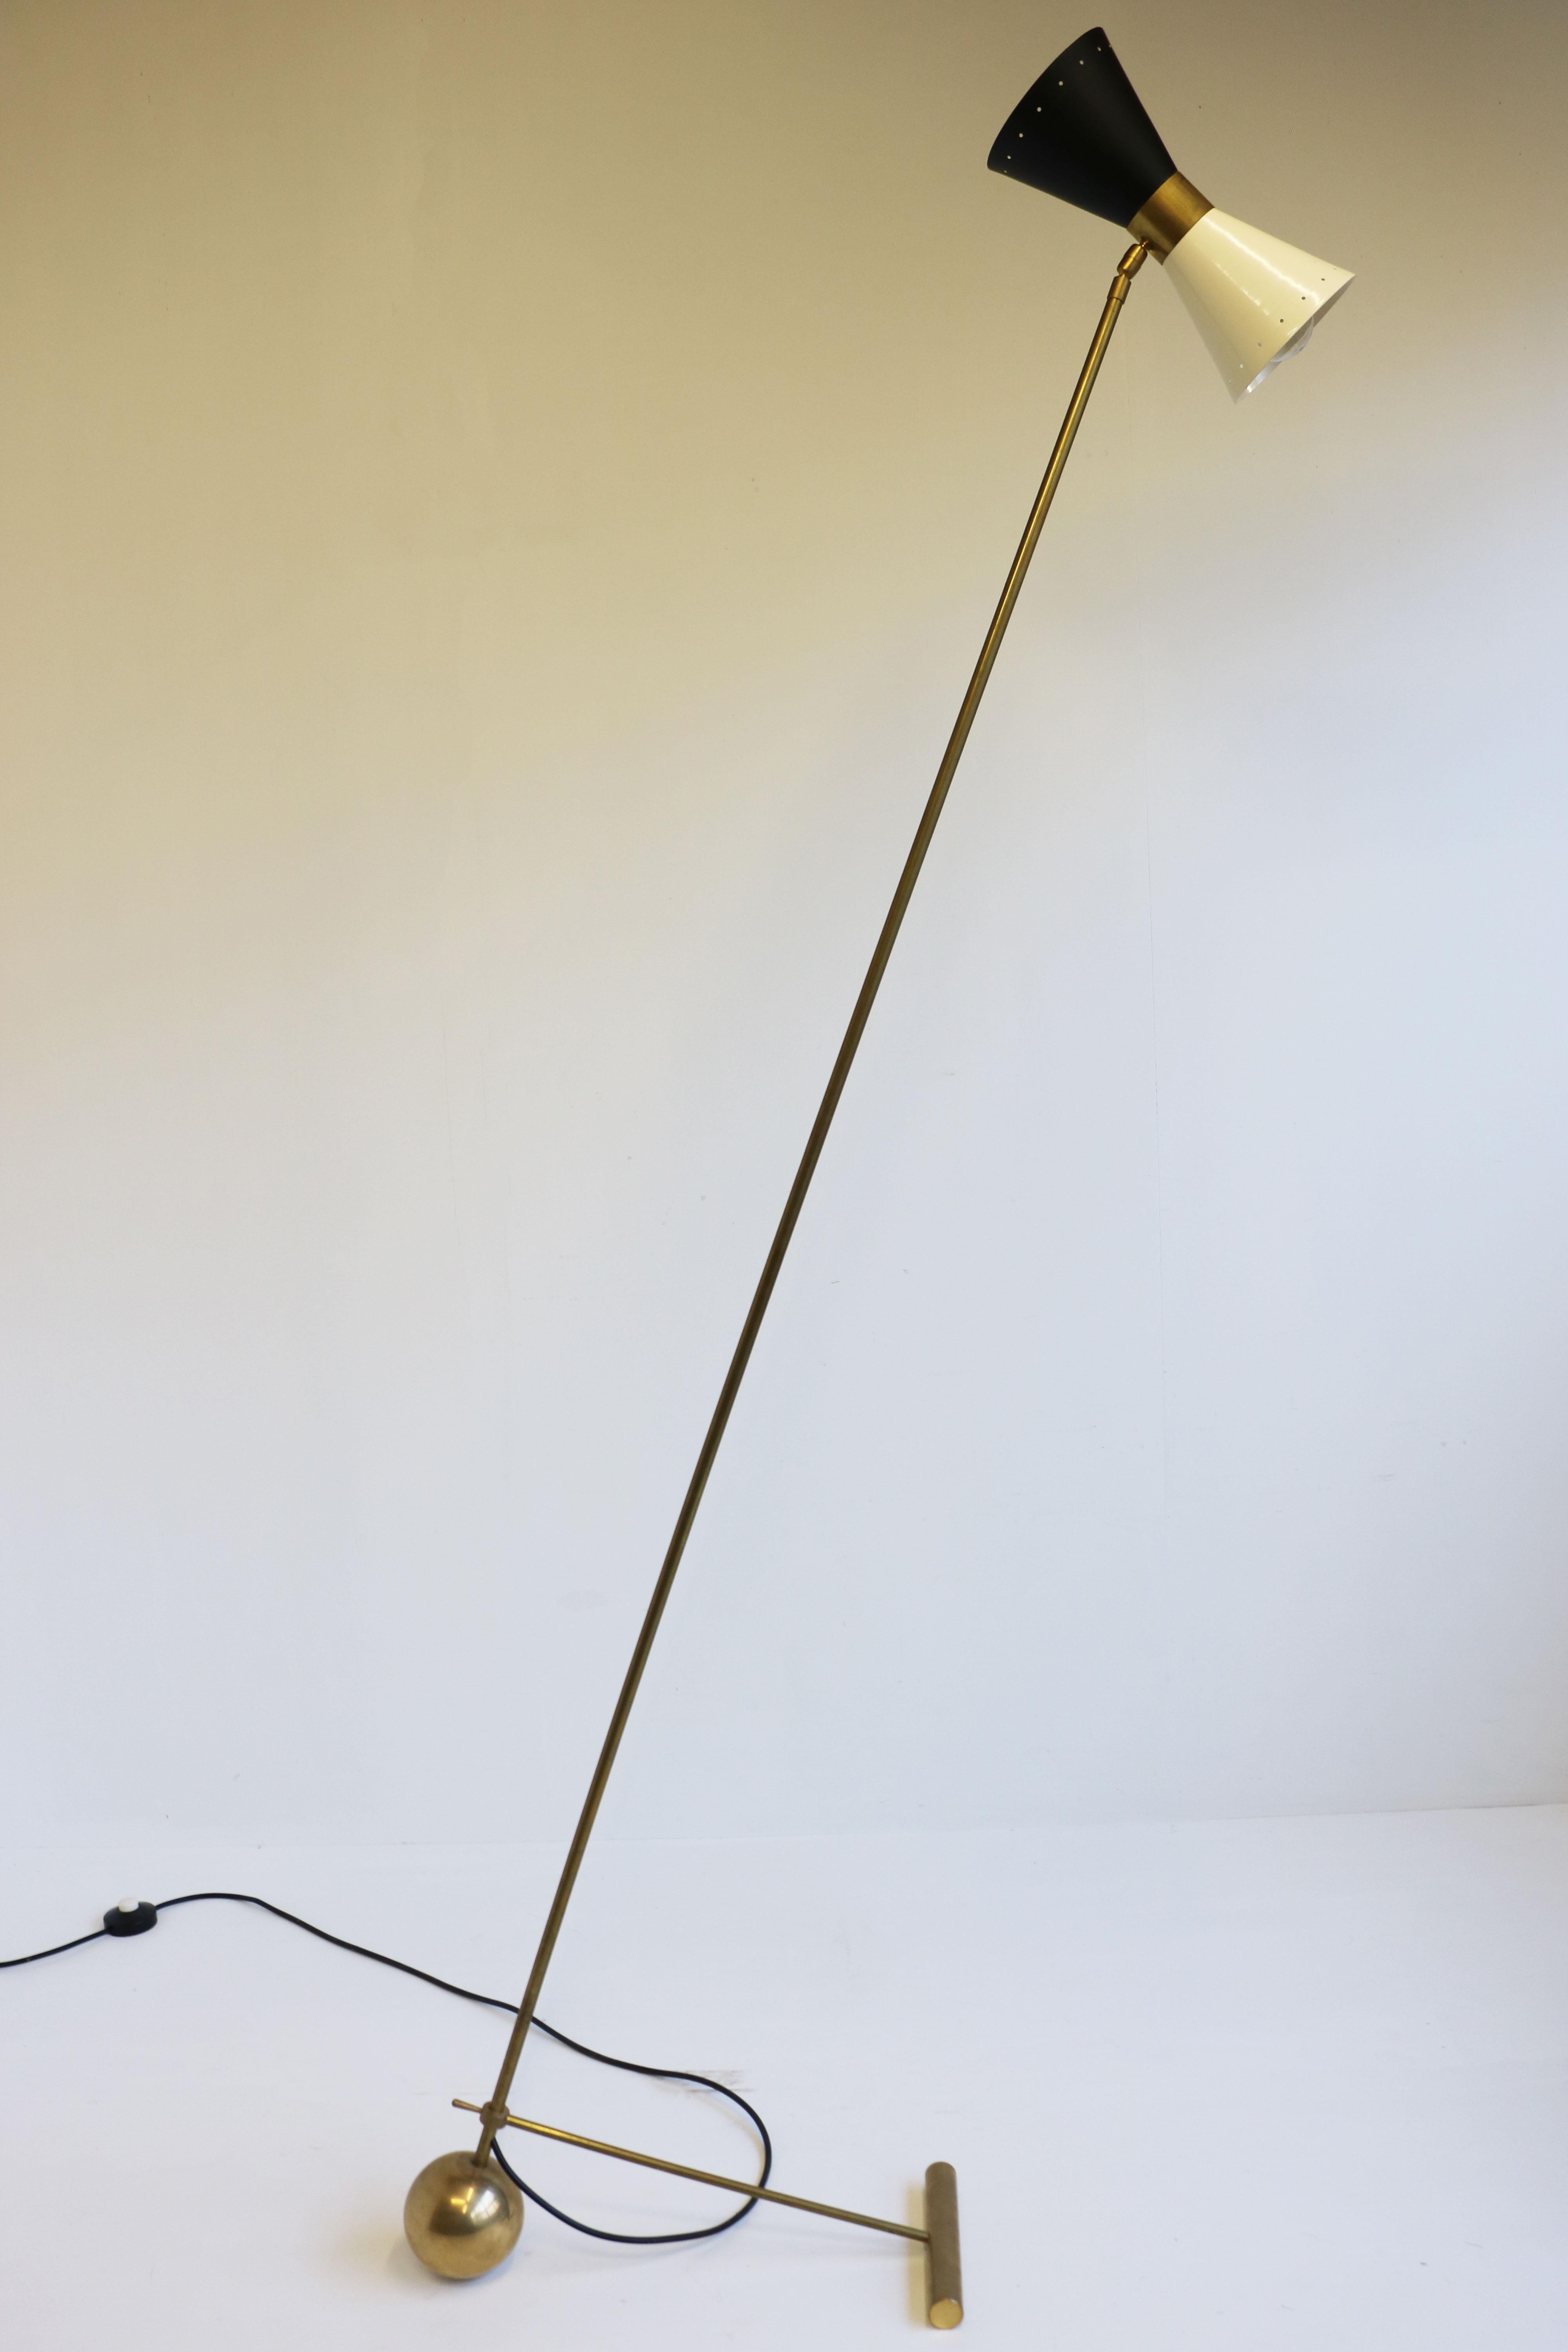 Superbe lampadaire de design italien minimaliste dans le style de Stilnovo 1950. 
Cadre en laiton patiné avec base au design minimaliste unique. Superbe abat-jour en forme de diabolo en noir et blanc. Un design intemporel ! 
L'angle du lampadaire